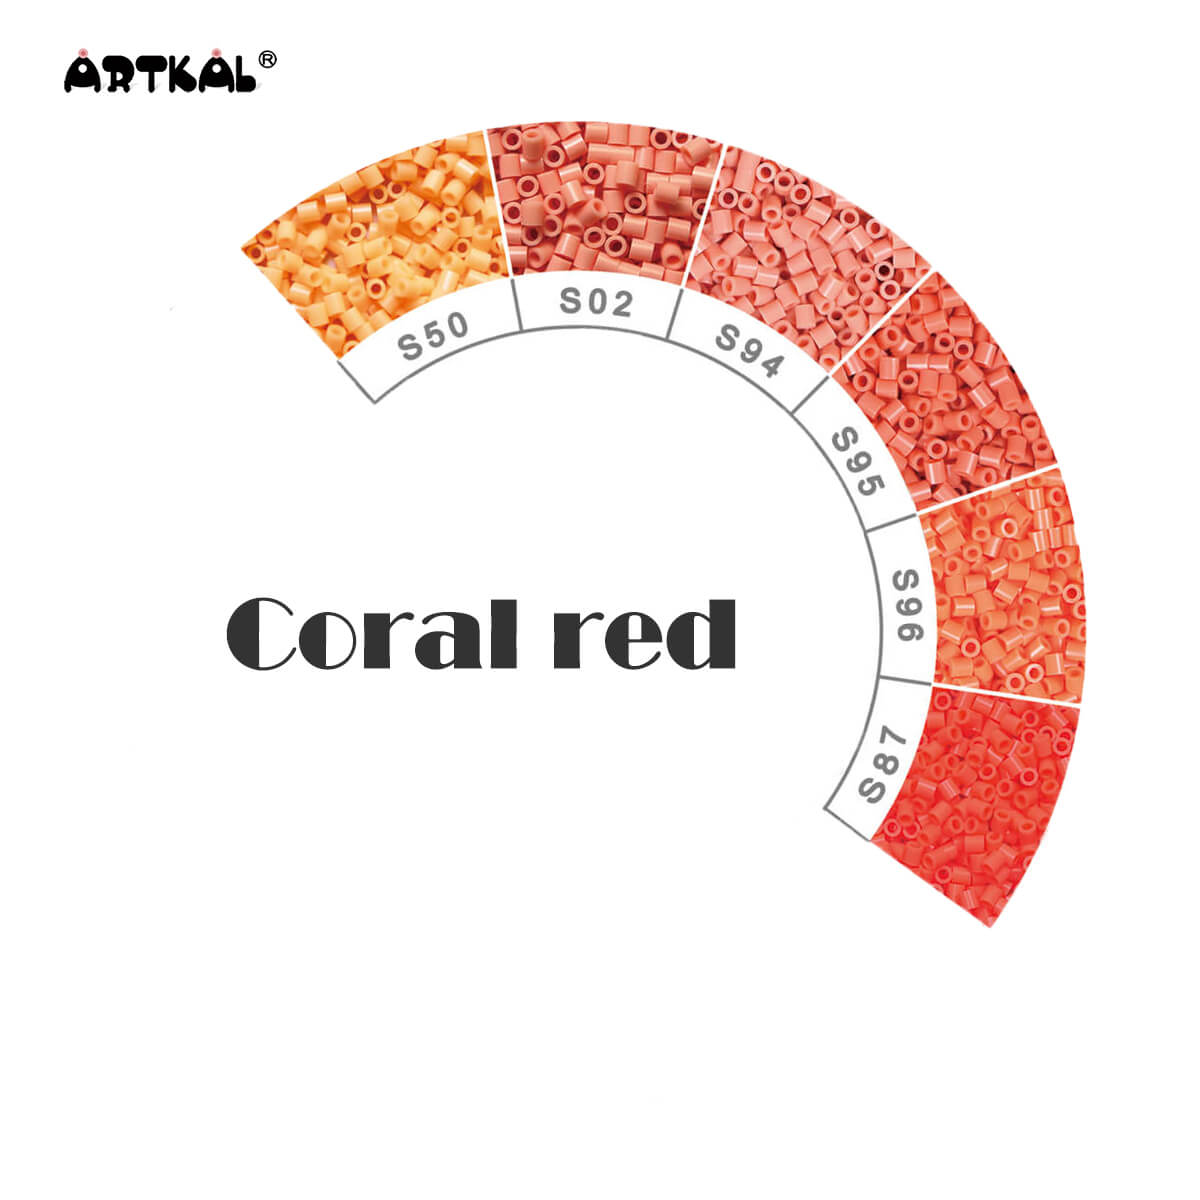 Coral dearg-Midi 1000 coirníní Pacáiste Aonair